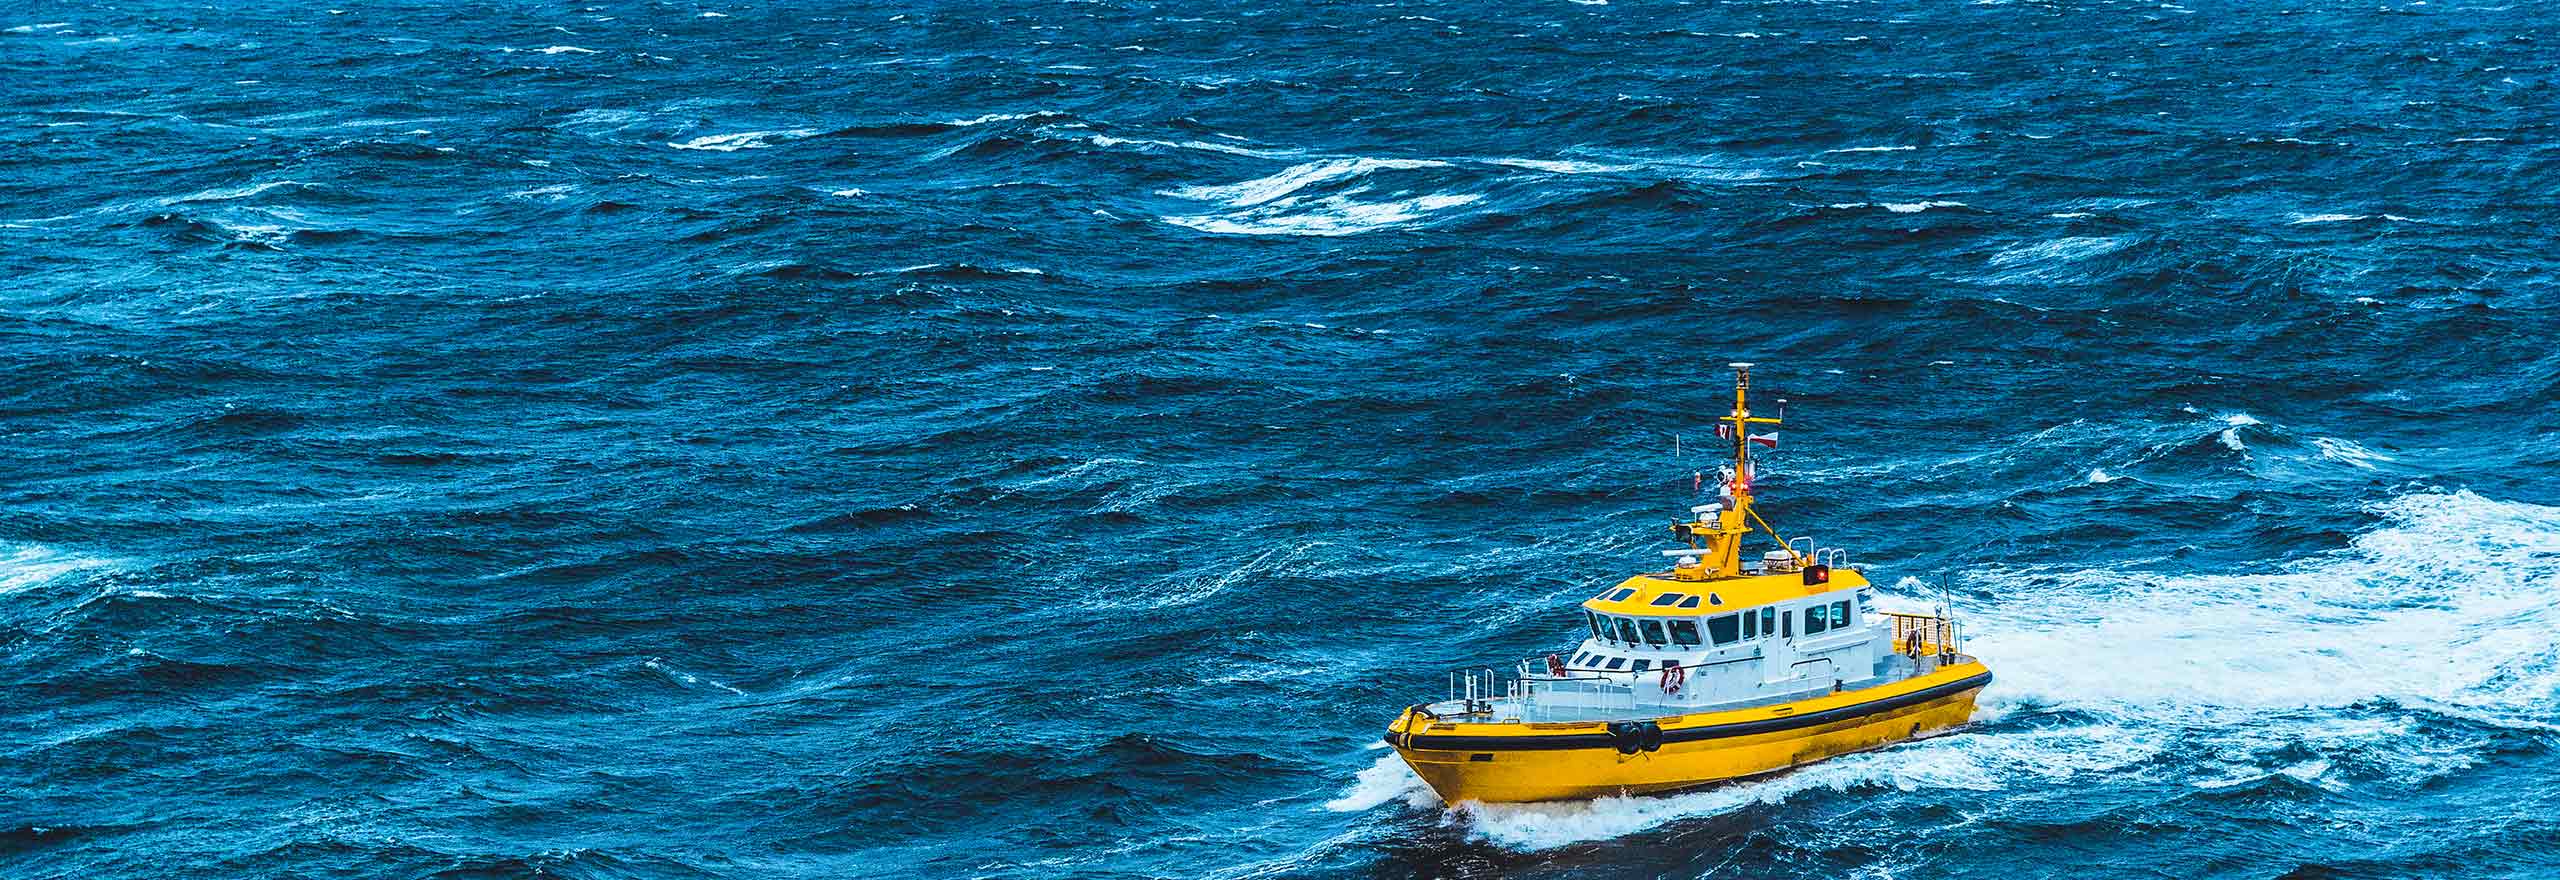 Um navio amarelo de proteção costeira é mostrado em alto mar em um mar tempestuoso e agitado.